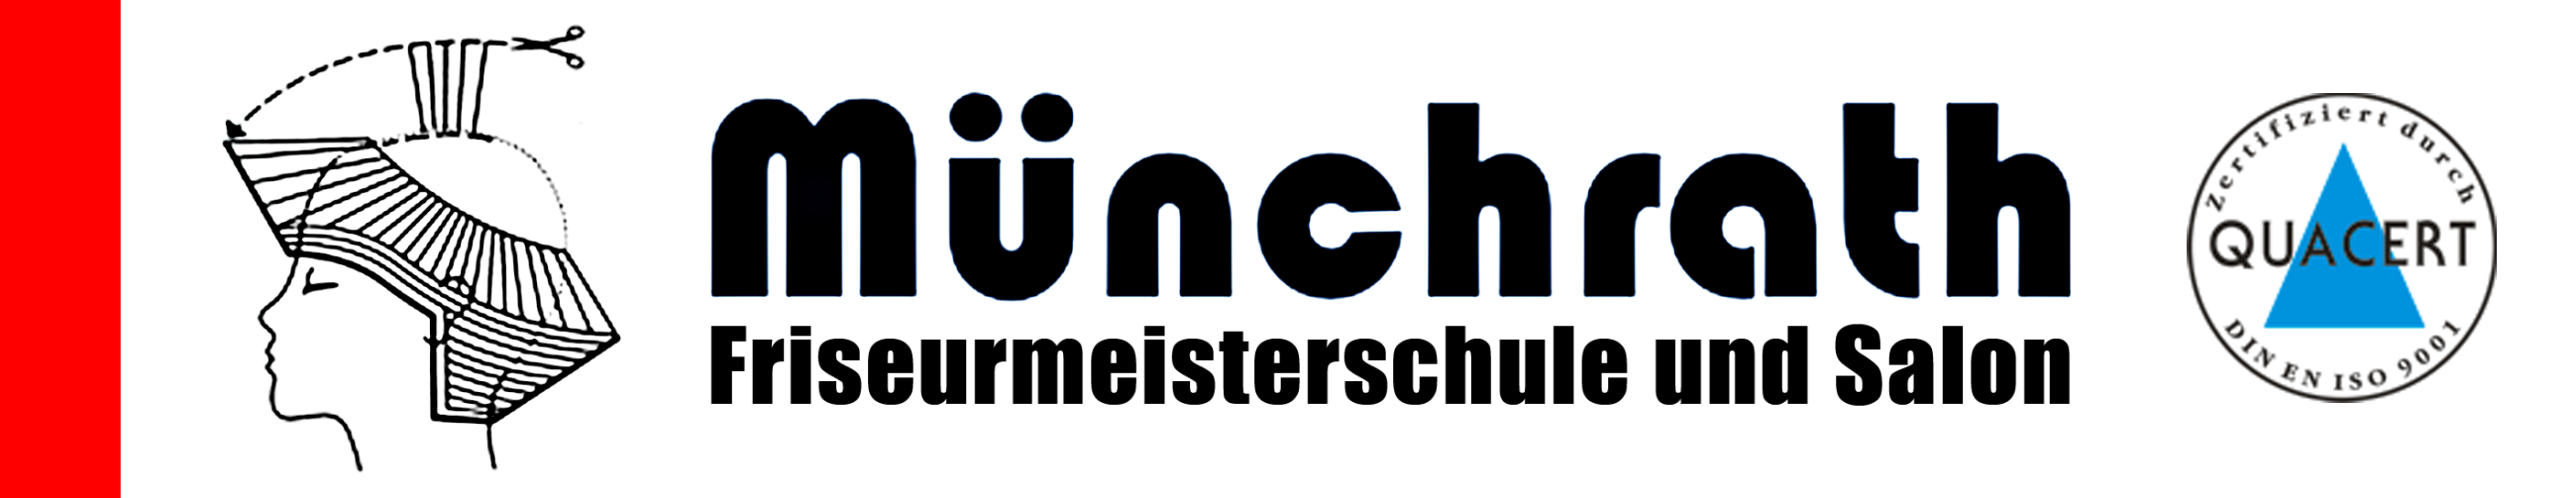 (c) Muenchrath-friseur.de